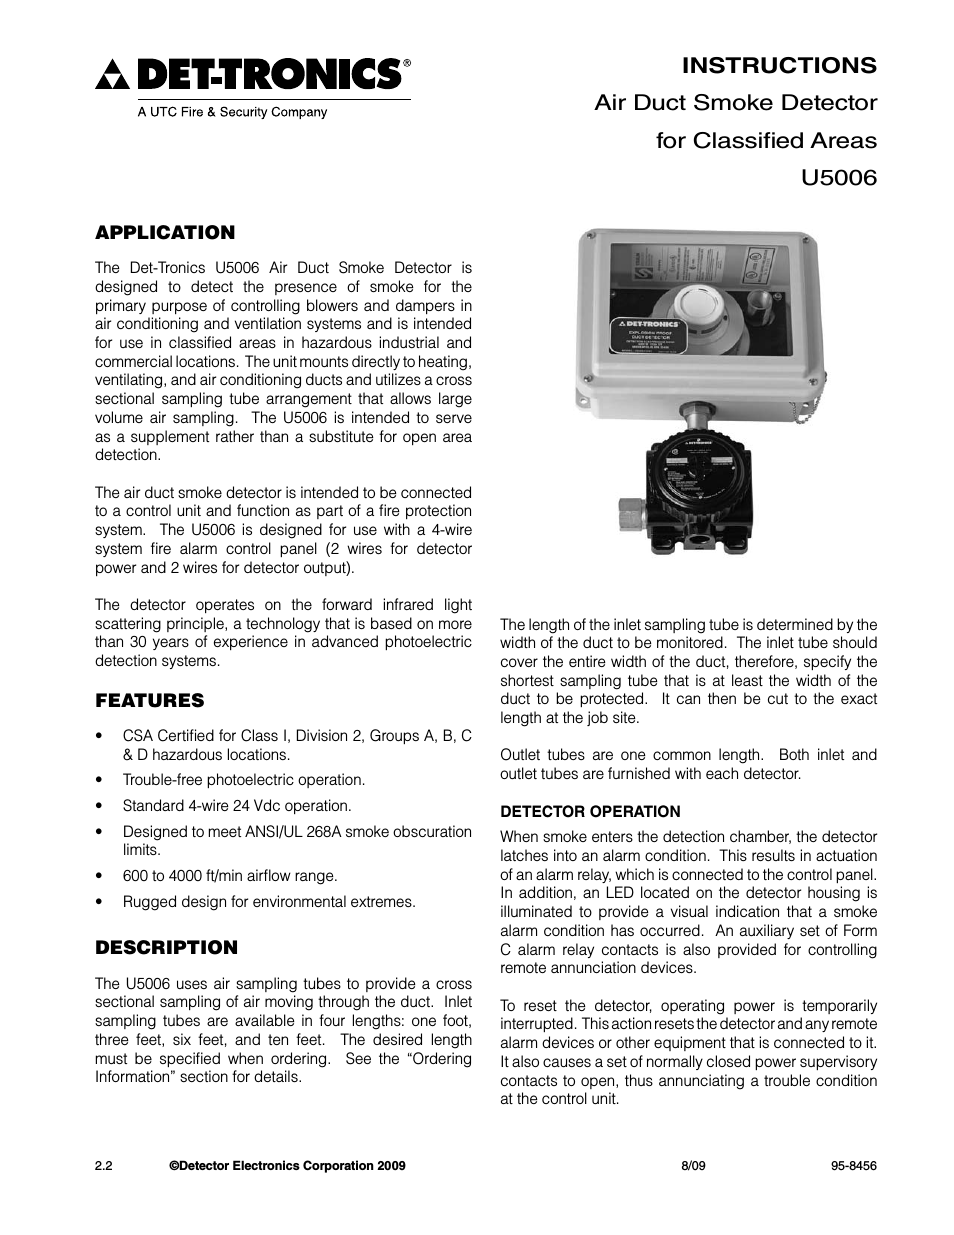 U5006 Air Duct Smoke Detector